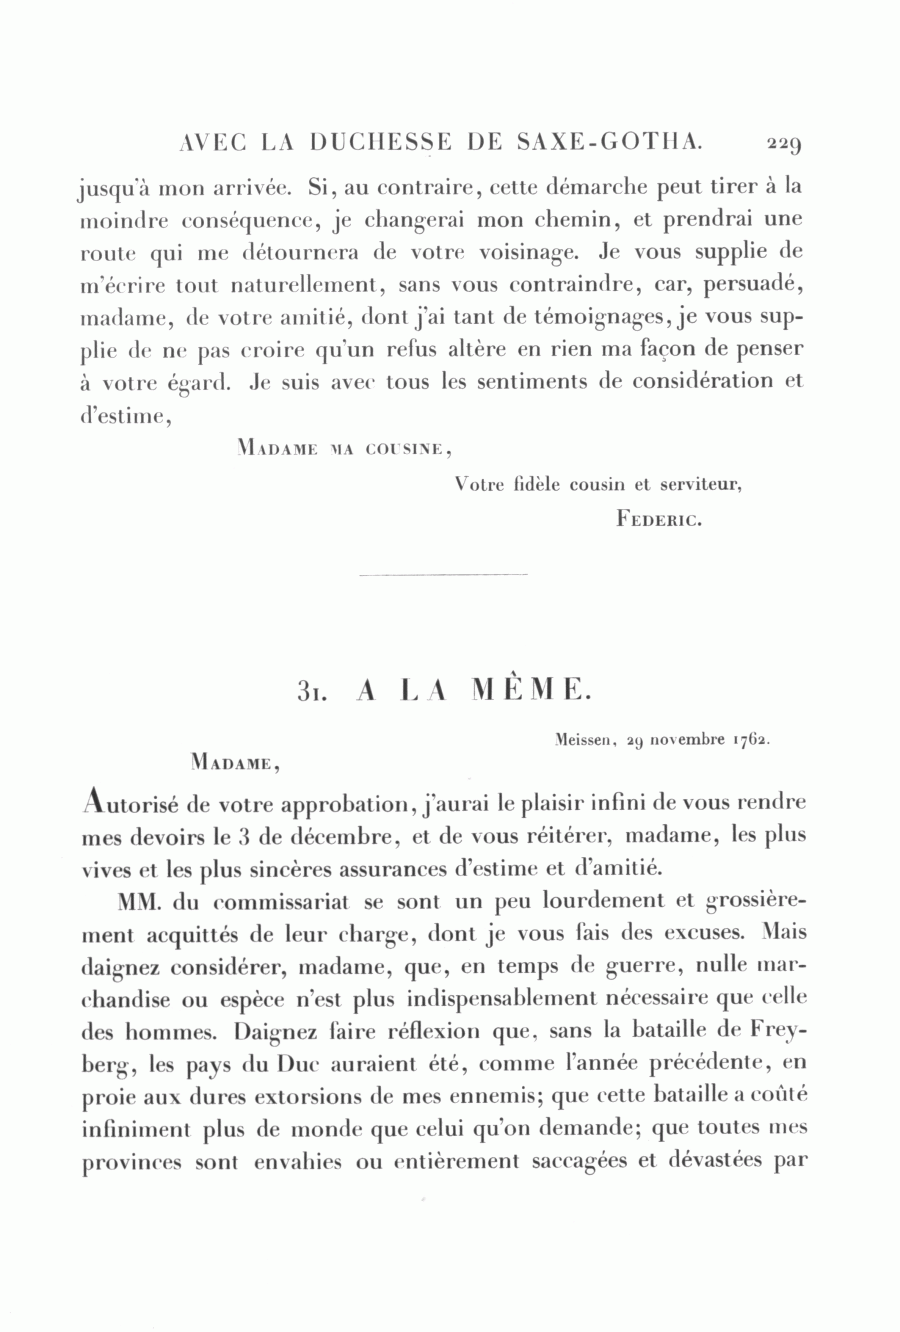 S. 229, Obj. 2